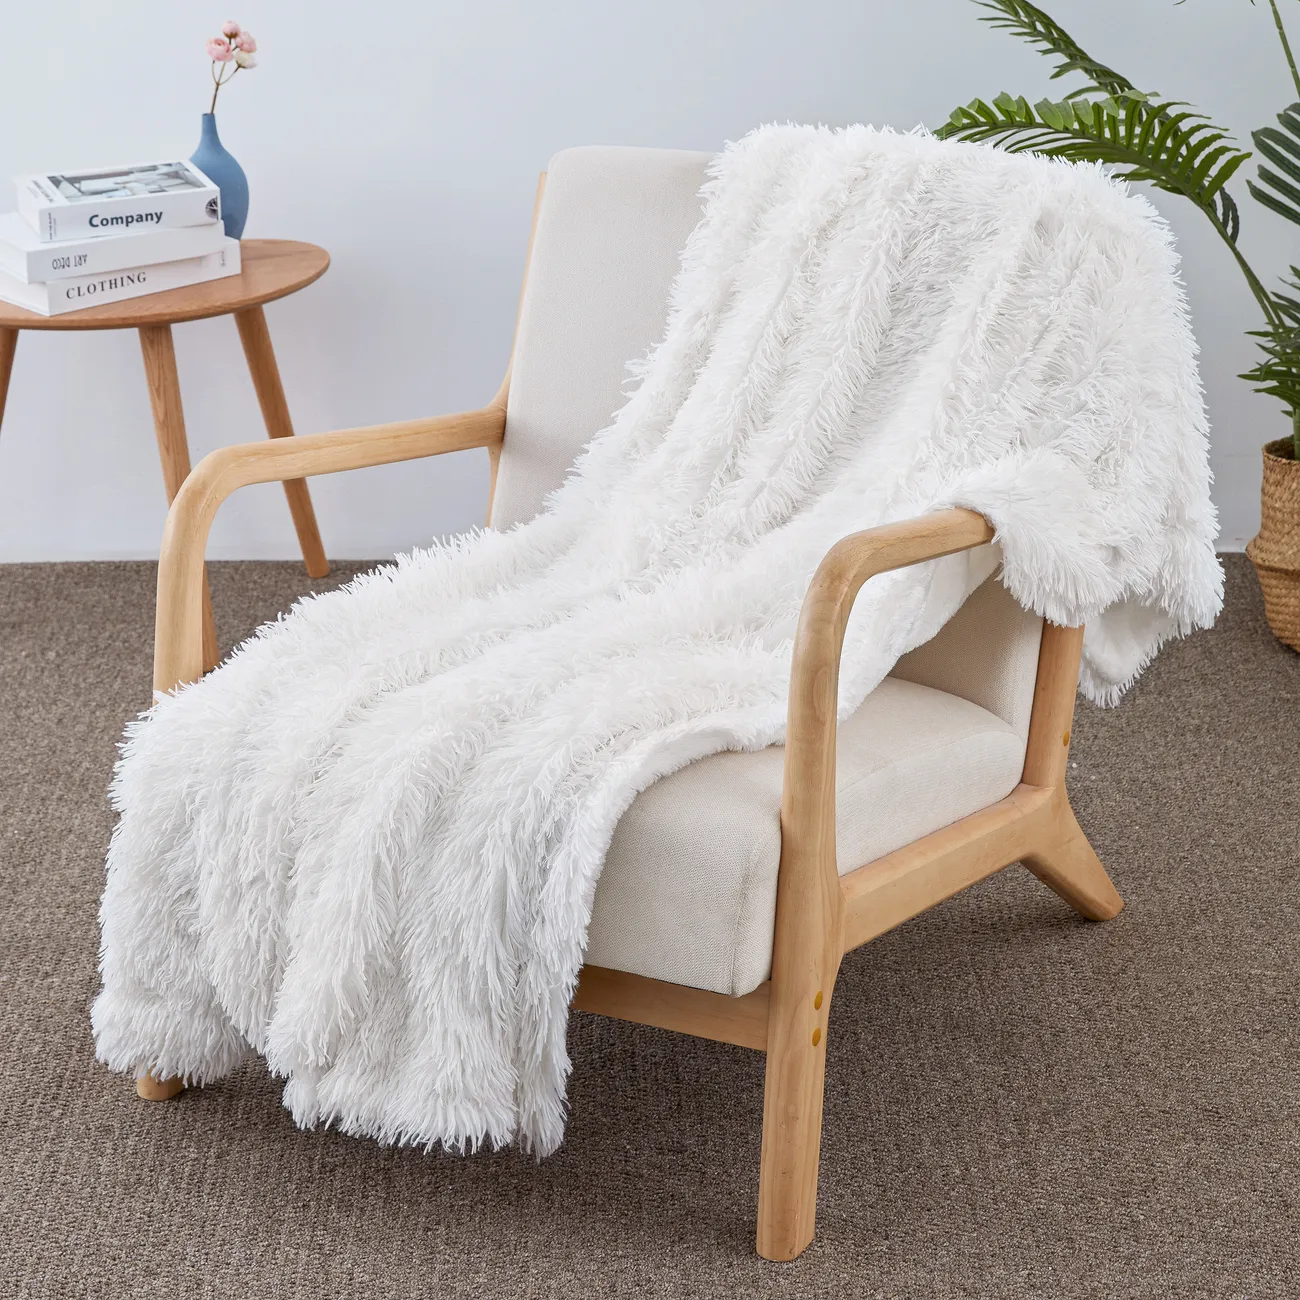 優質白色 PV 羊毛毯 - 超柔軟、耐用、可機洗 - 非常適合居家舒適和時尚裝飾 白色 big image 1